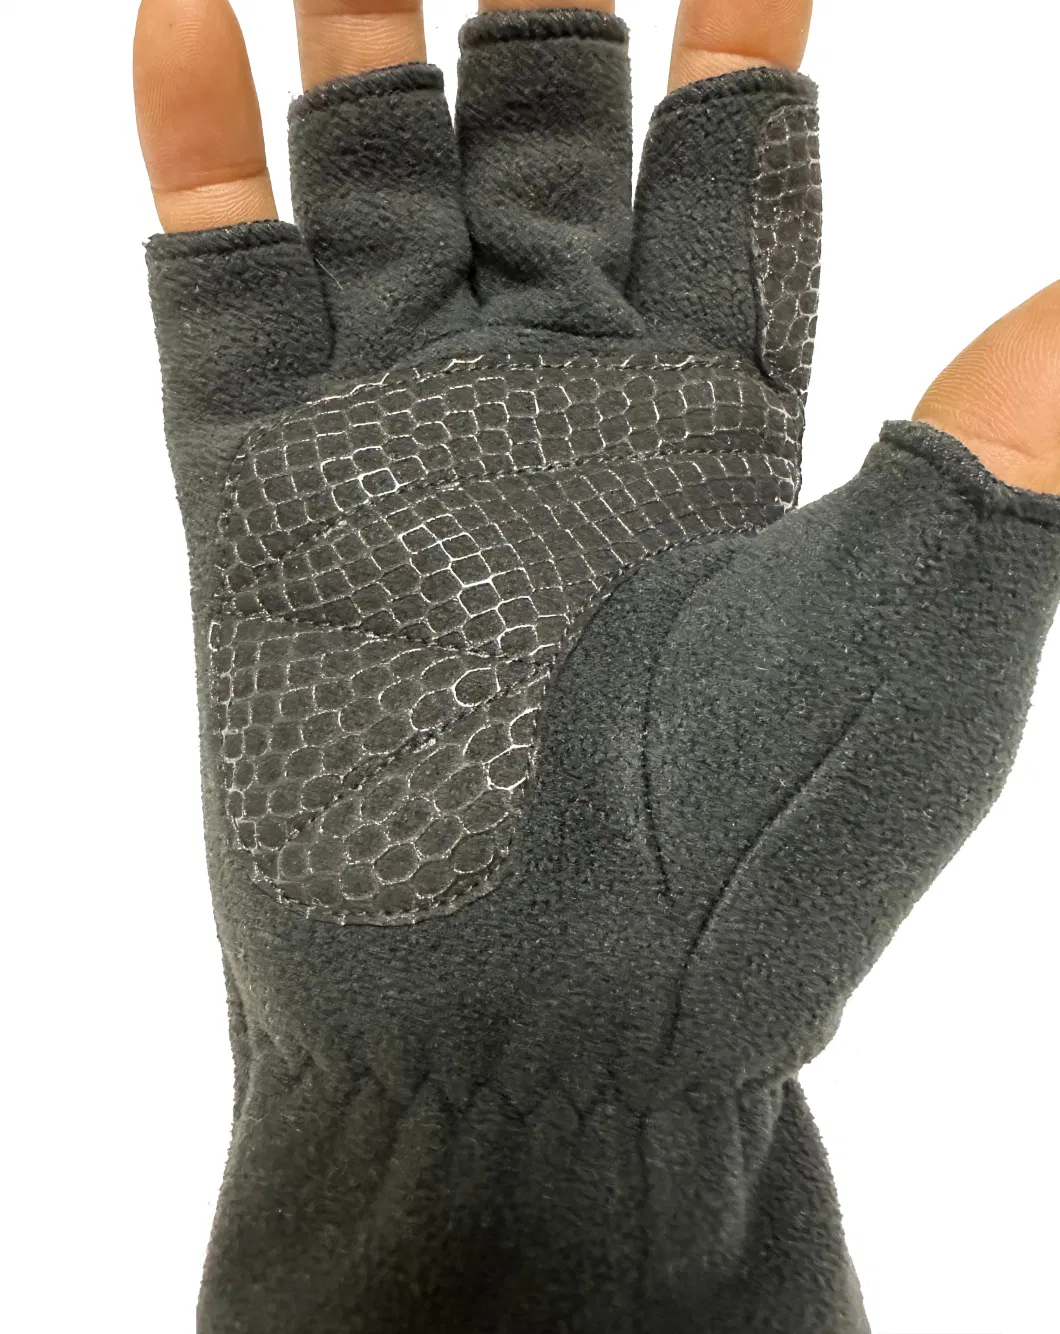 Fingerless Half Fingers Cycling Bike Fishing Sports Fleece Gloves